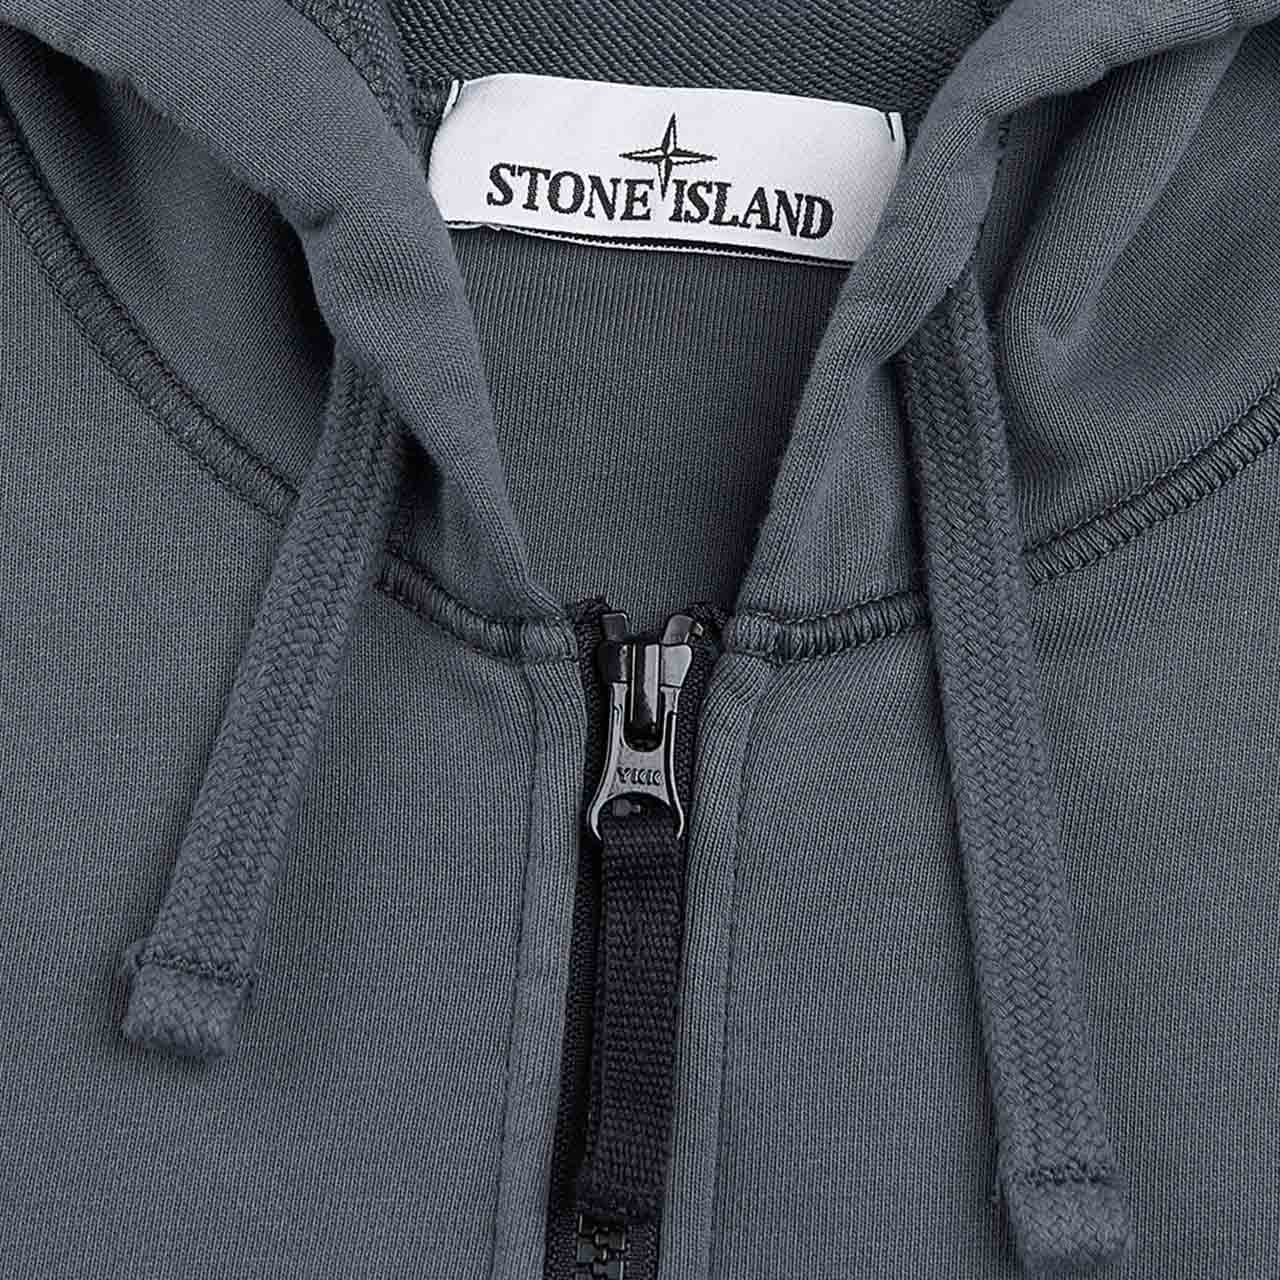 stone island sweatshirt (grau)